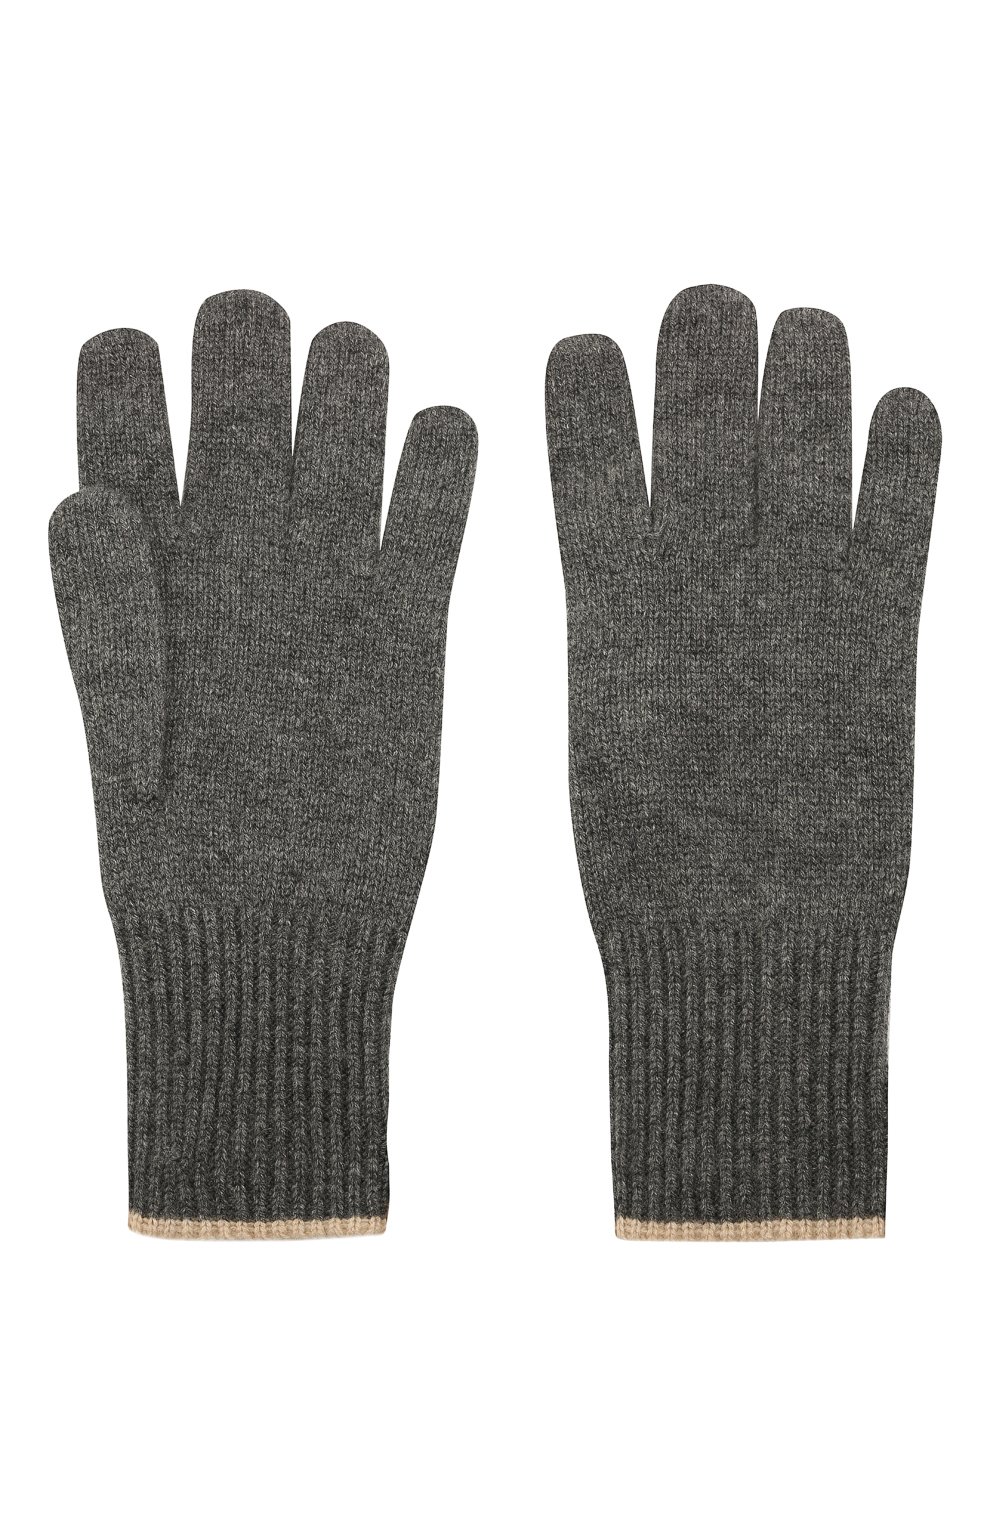 Мужские кашемировые перчатки BRUNELLO CUCINELLI серого цвета, арт. M2293118 | Фото 2 (Материал: Текстиль, Кашемир, Шерсть; Кросс-КТ: Трикотаж)